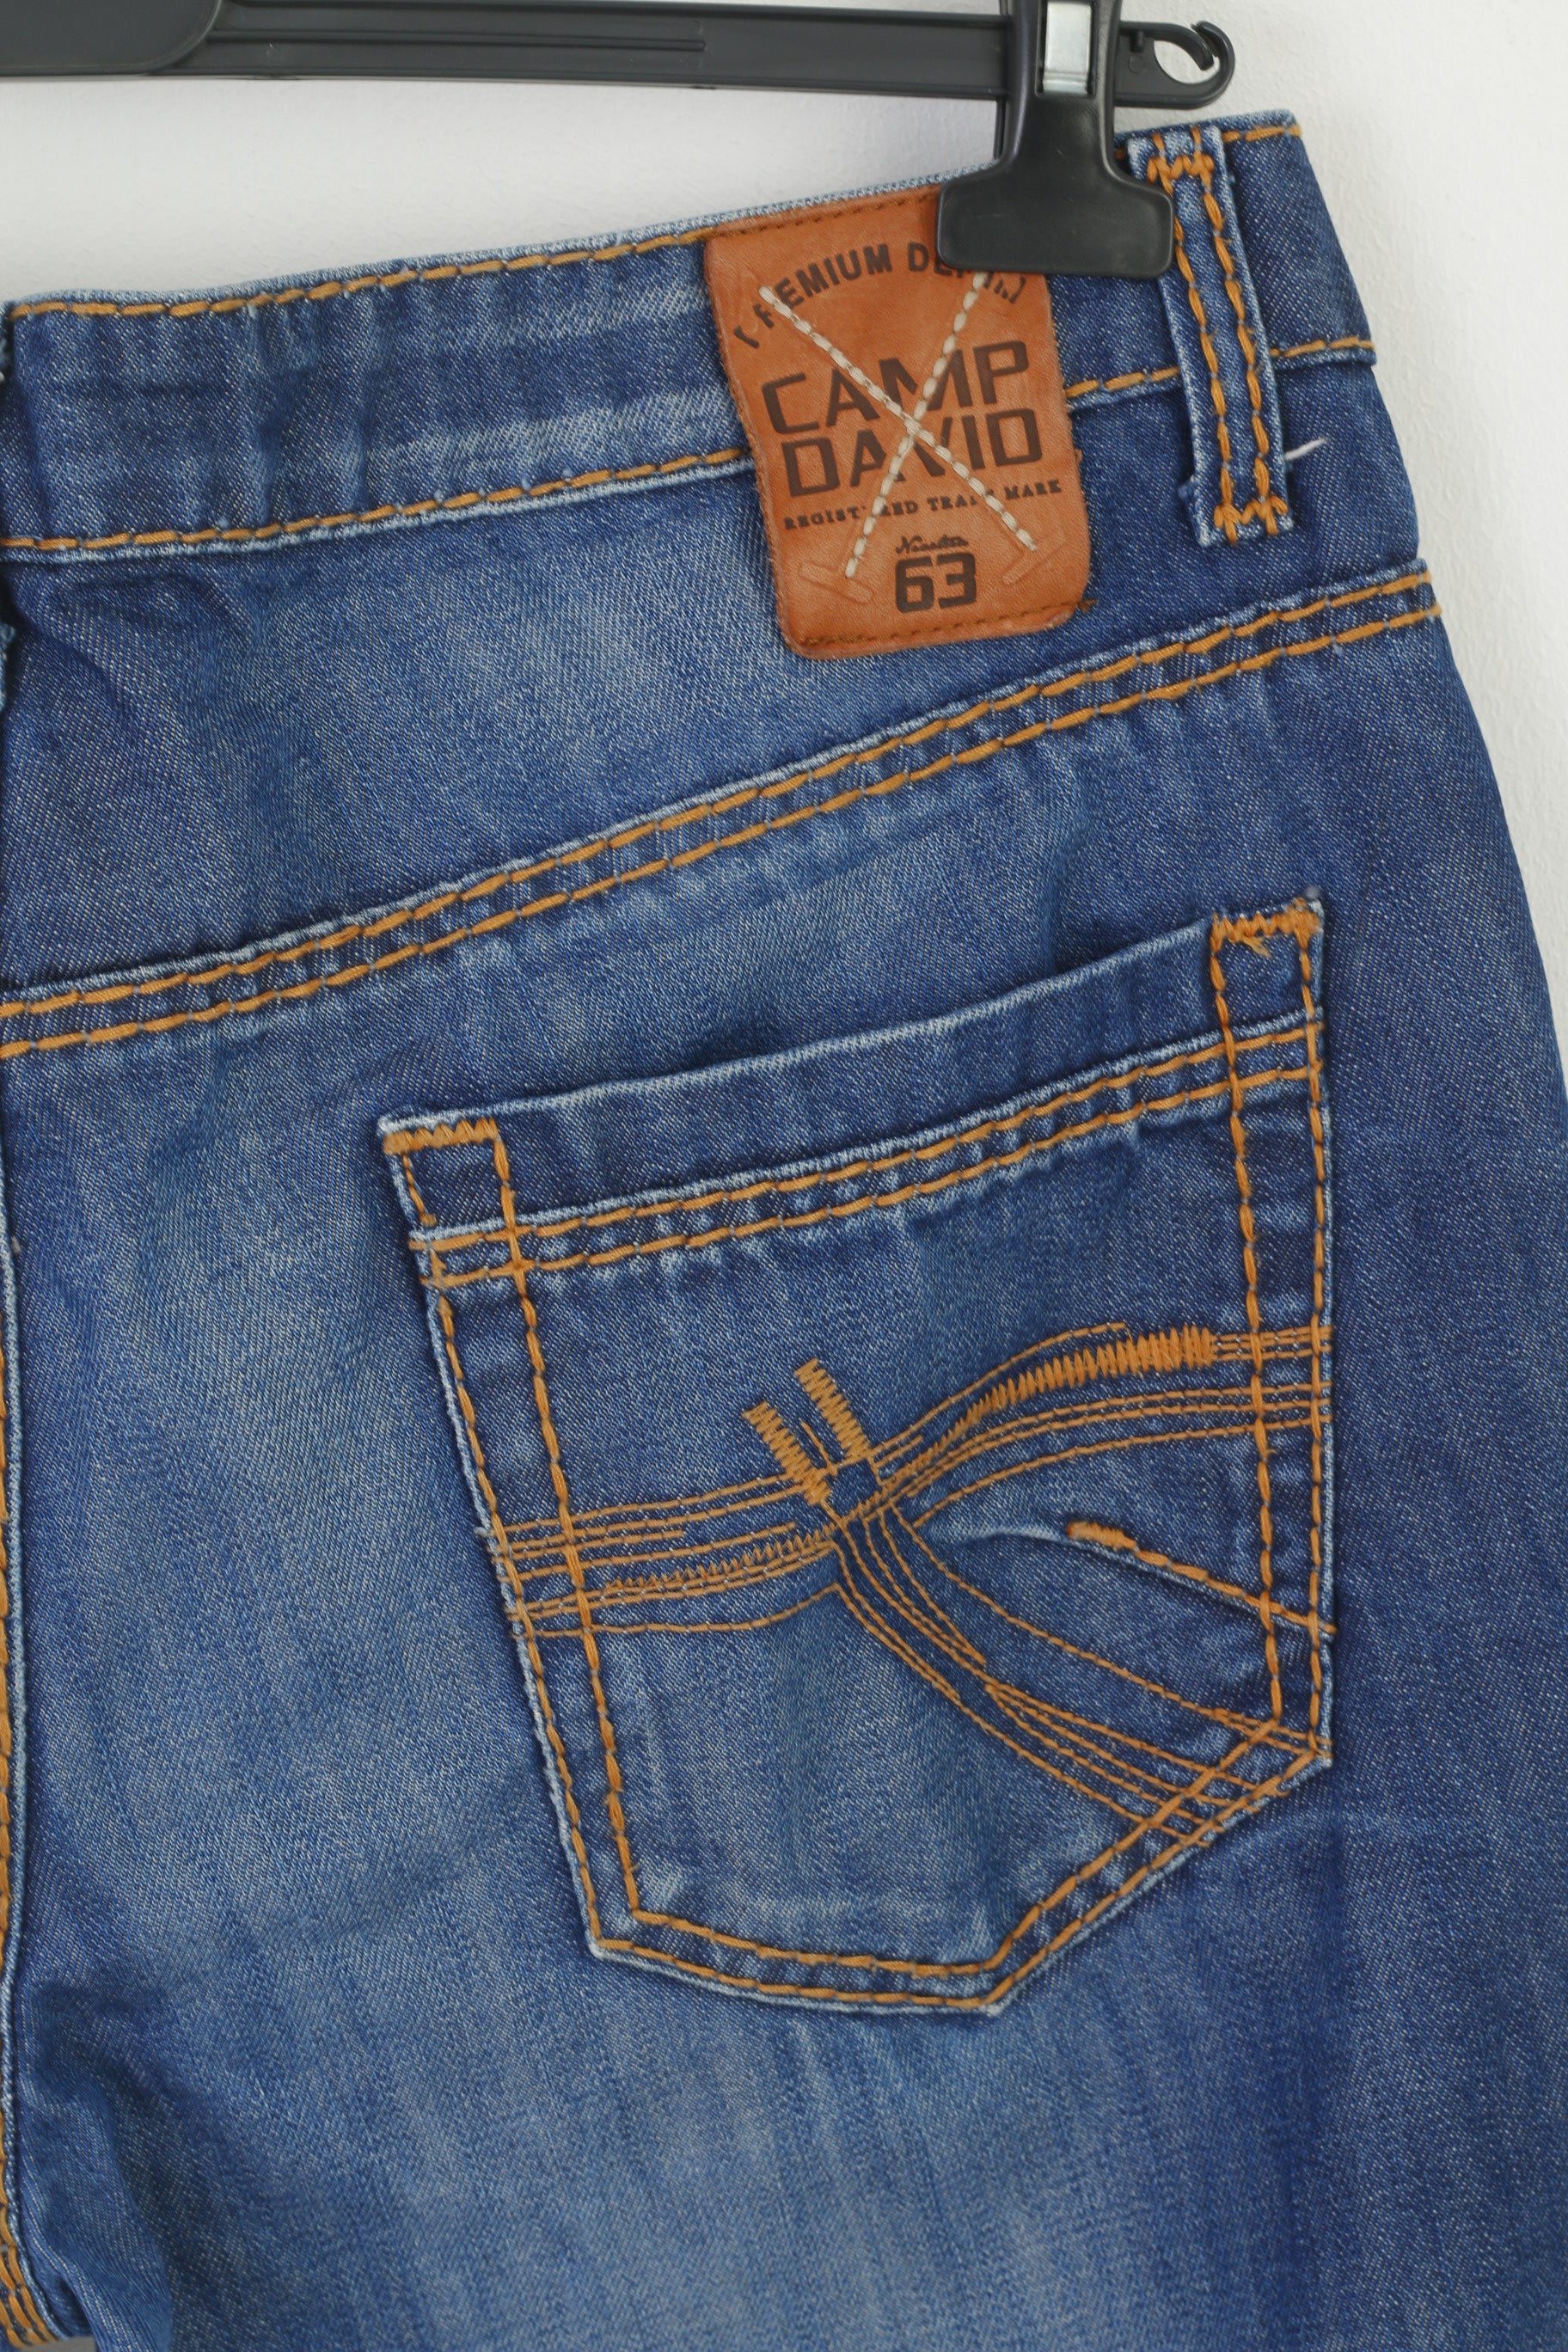 Camp David Men 36 Jeans Trousers Navy Denim Cotton Long Straight Leg P –  Retrospect Clothes | Jeans